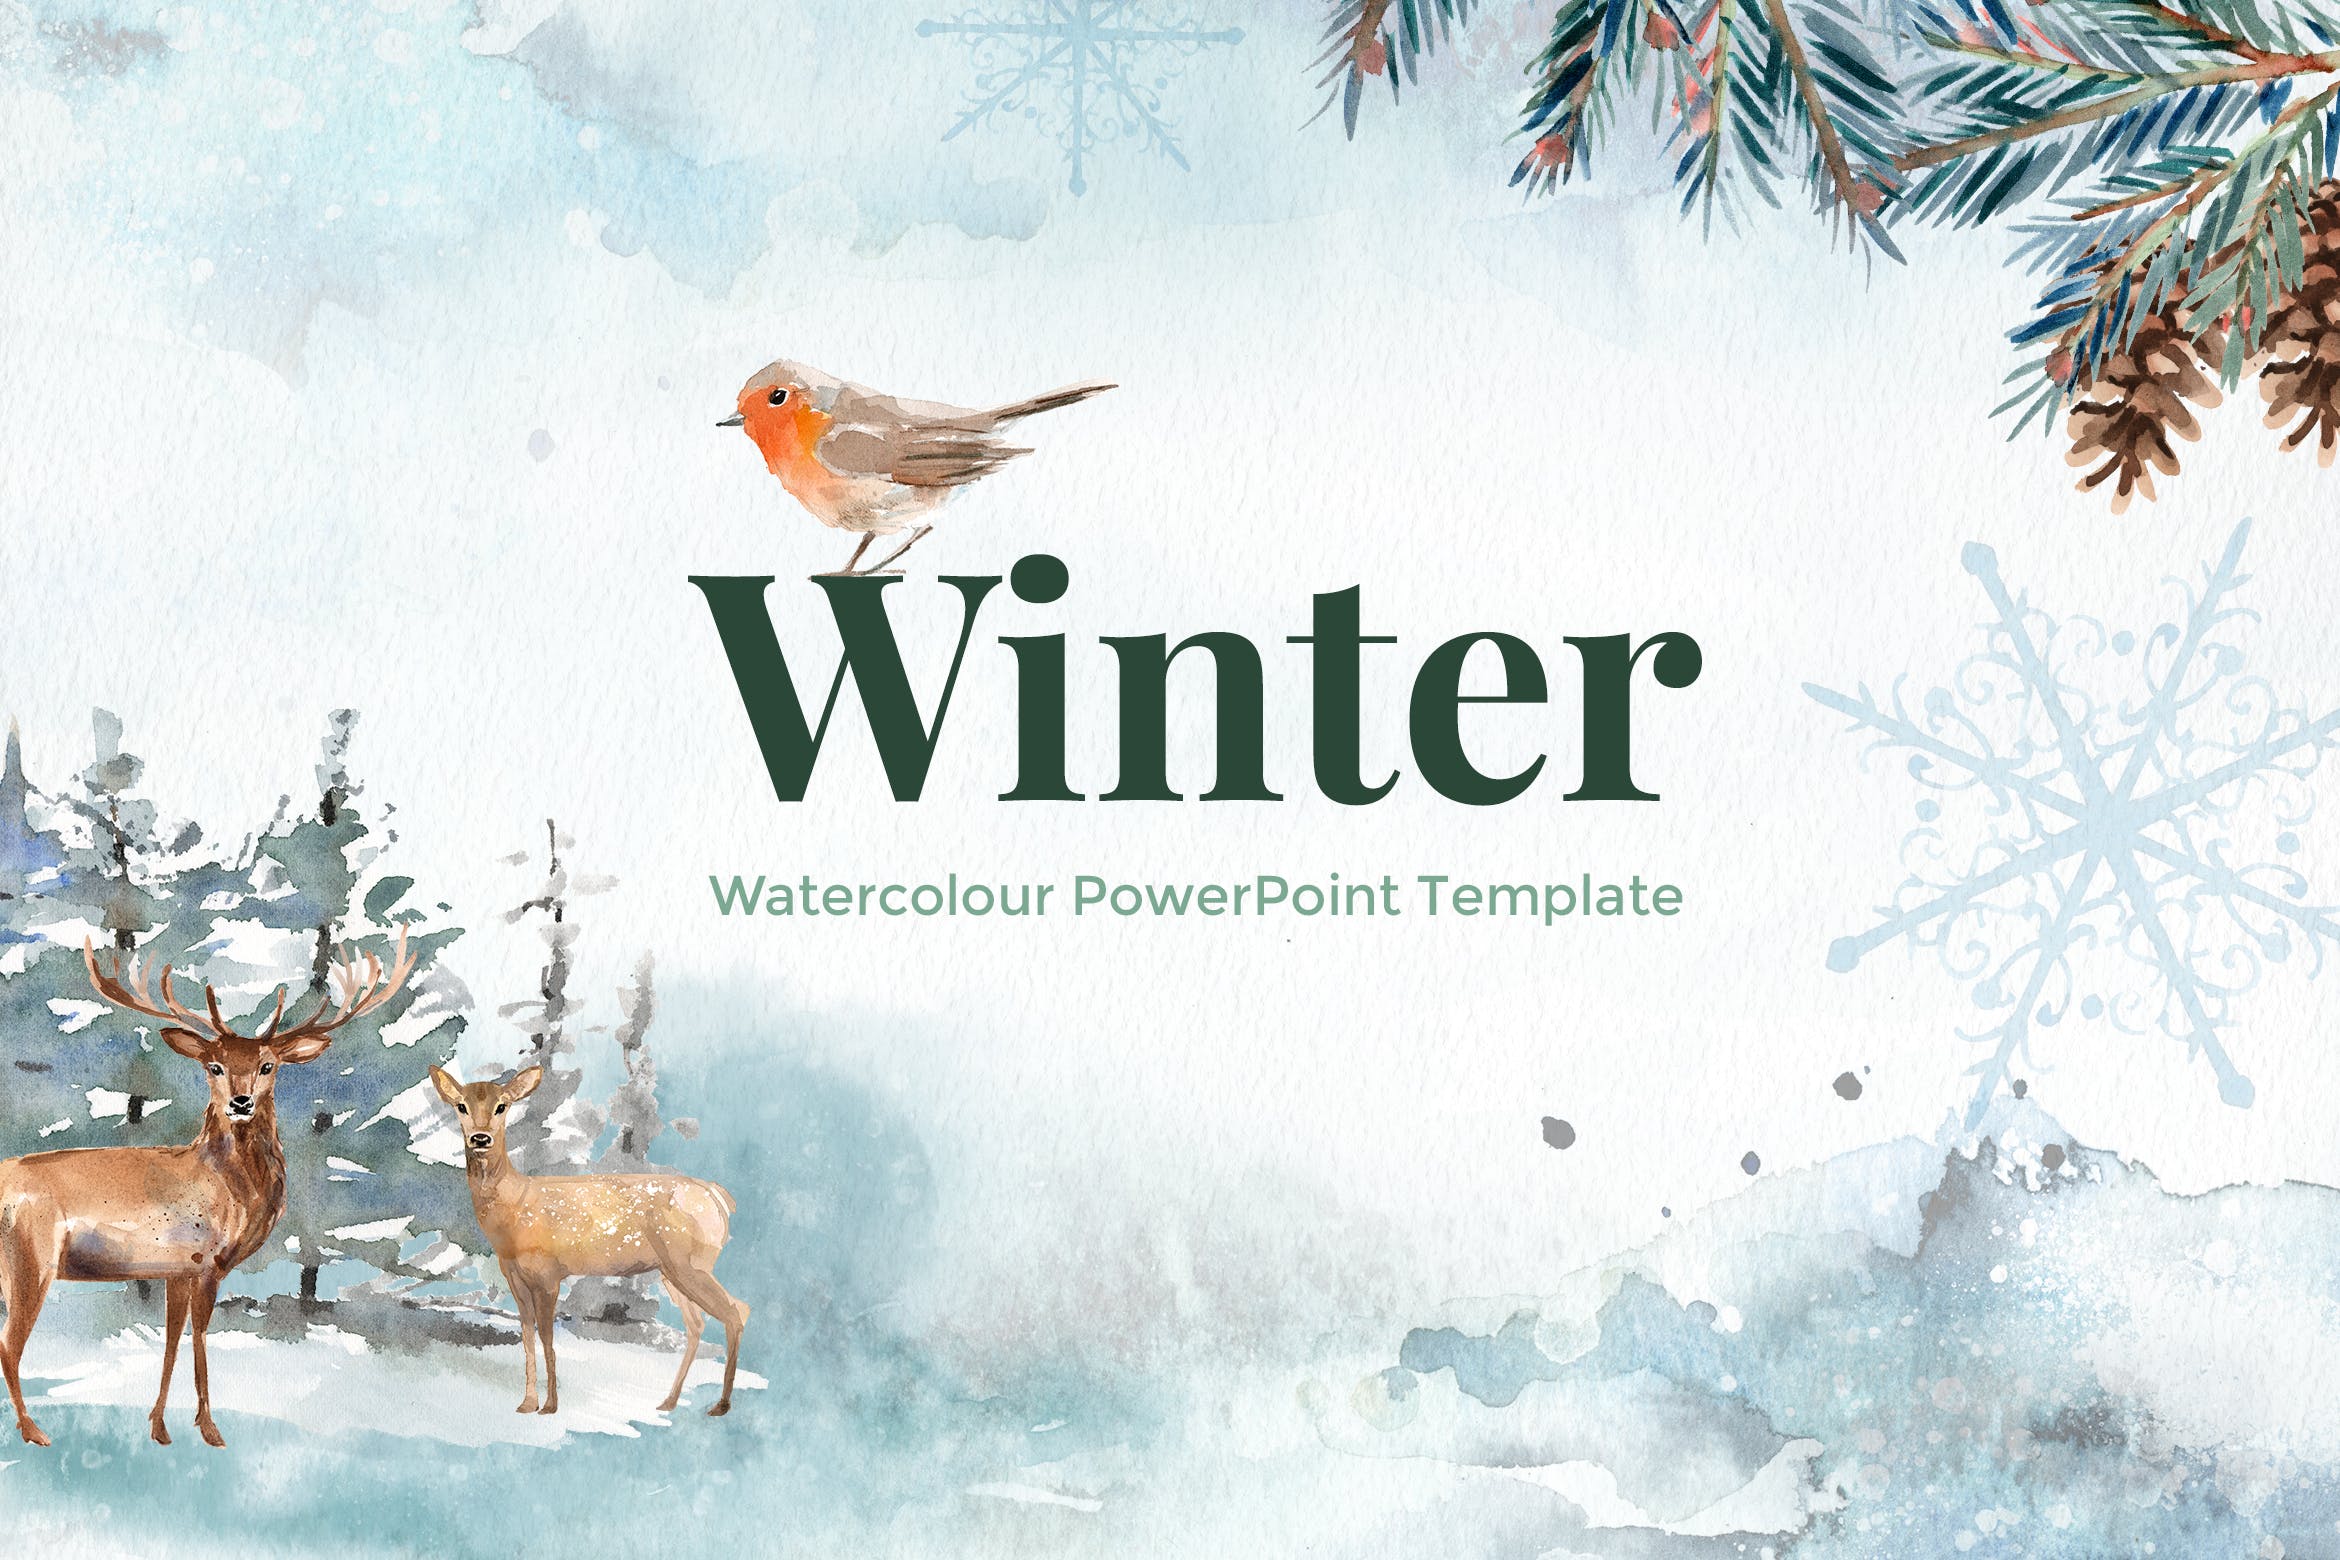 冬季水彩设计风格亿图网易图库精选PPT模板下载 Winter – Watercolour PowerPoint Template插图